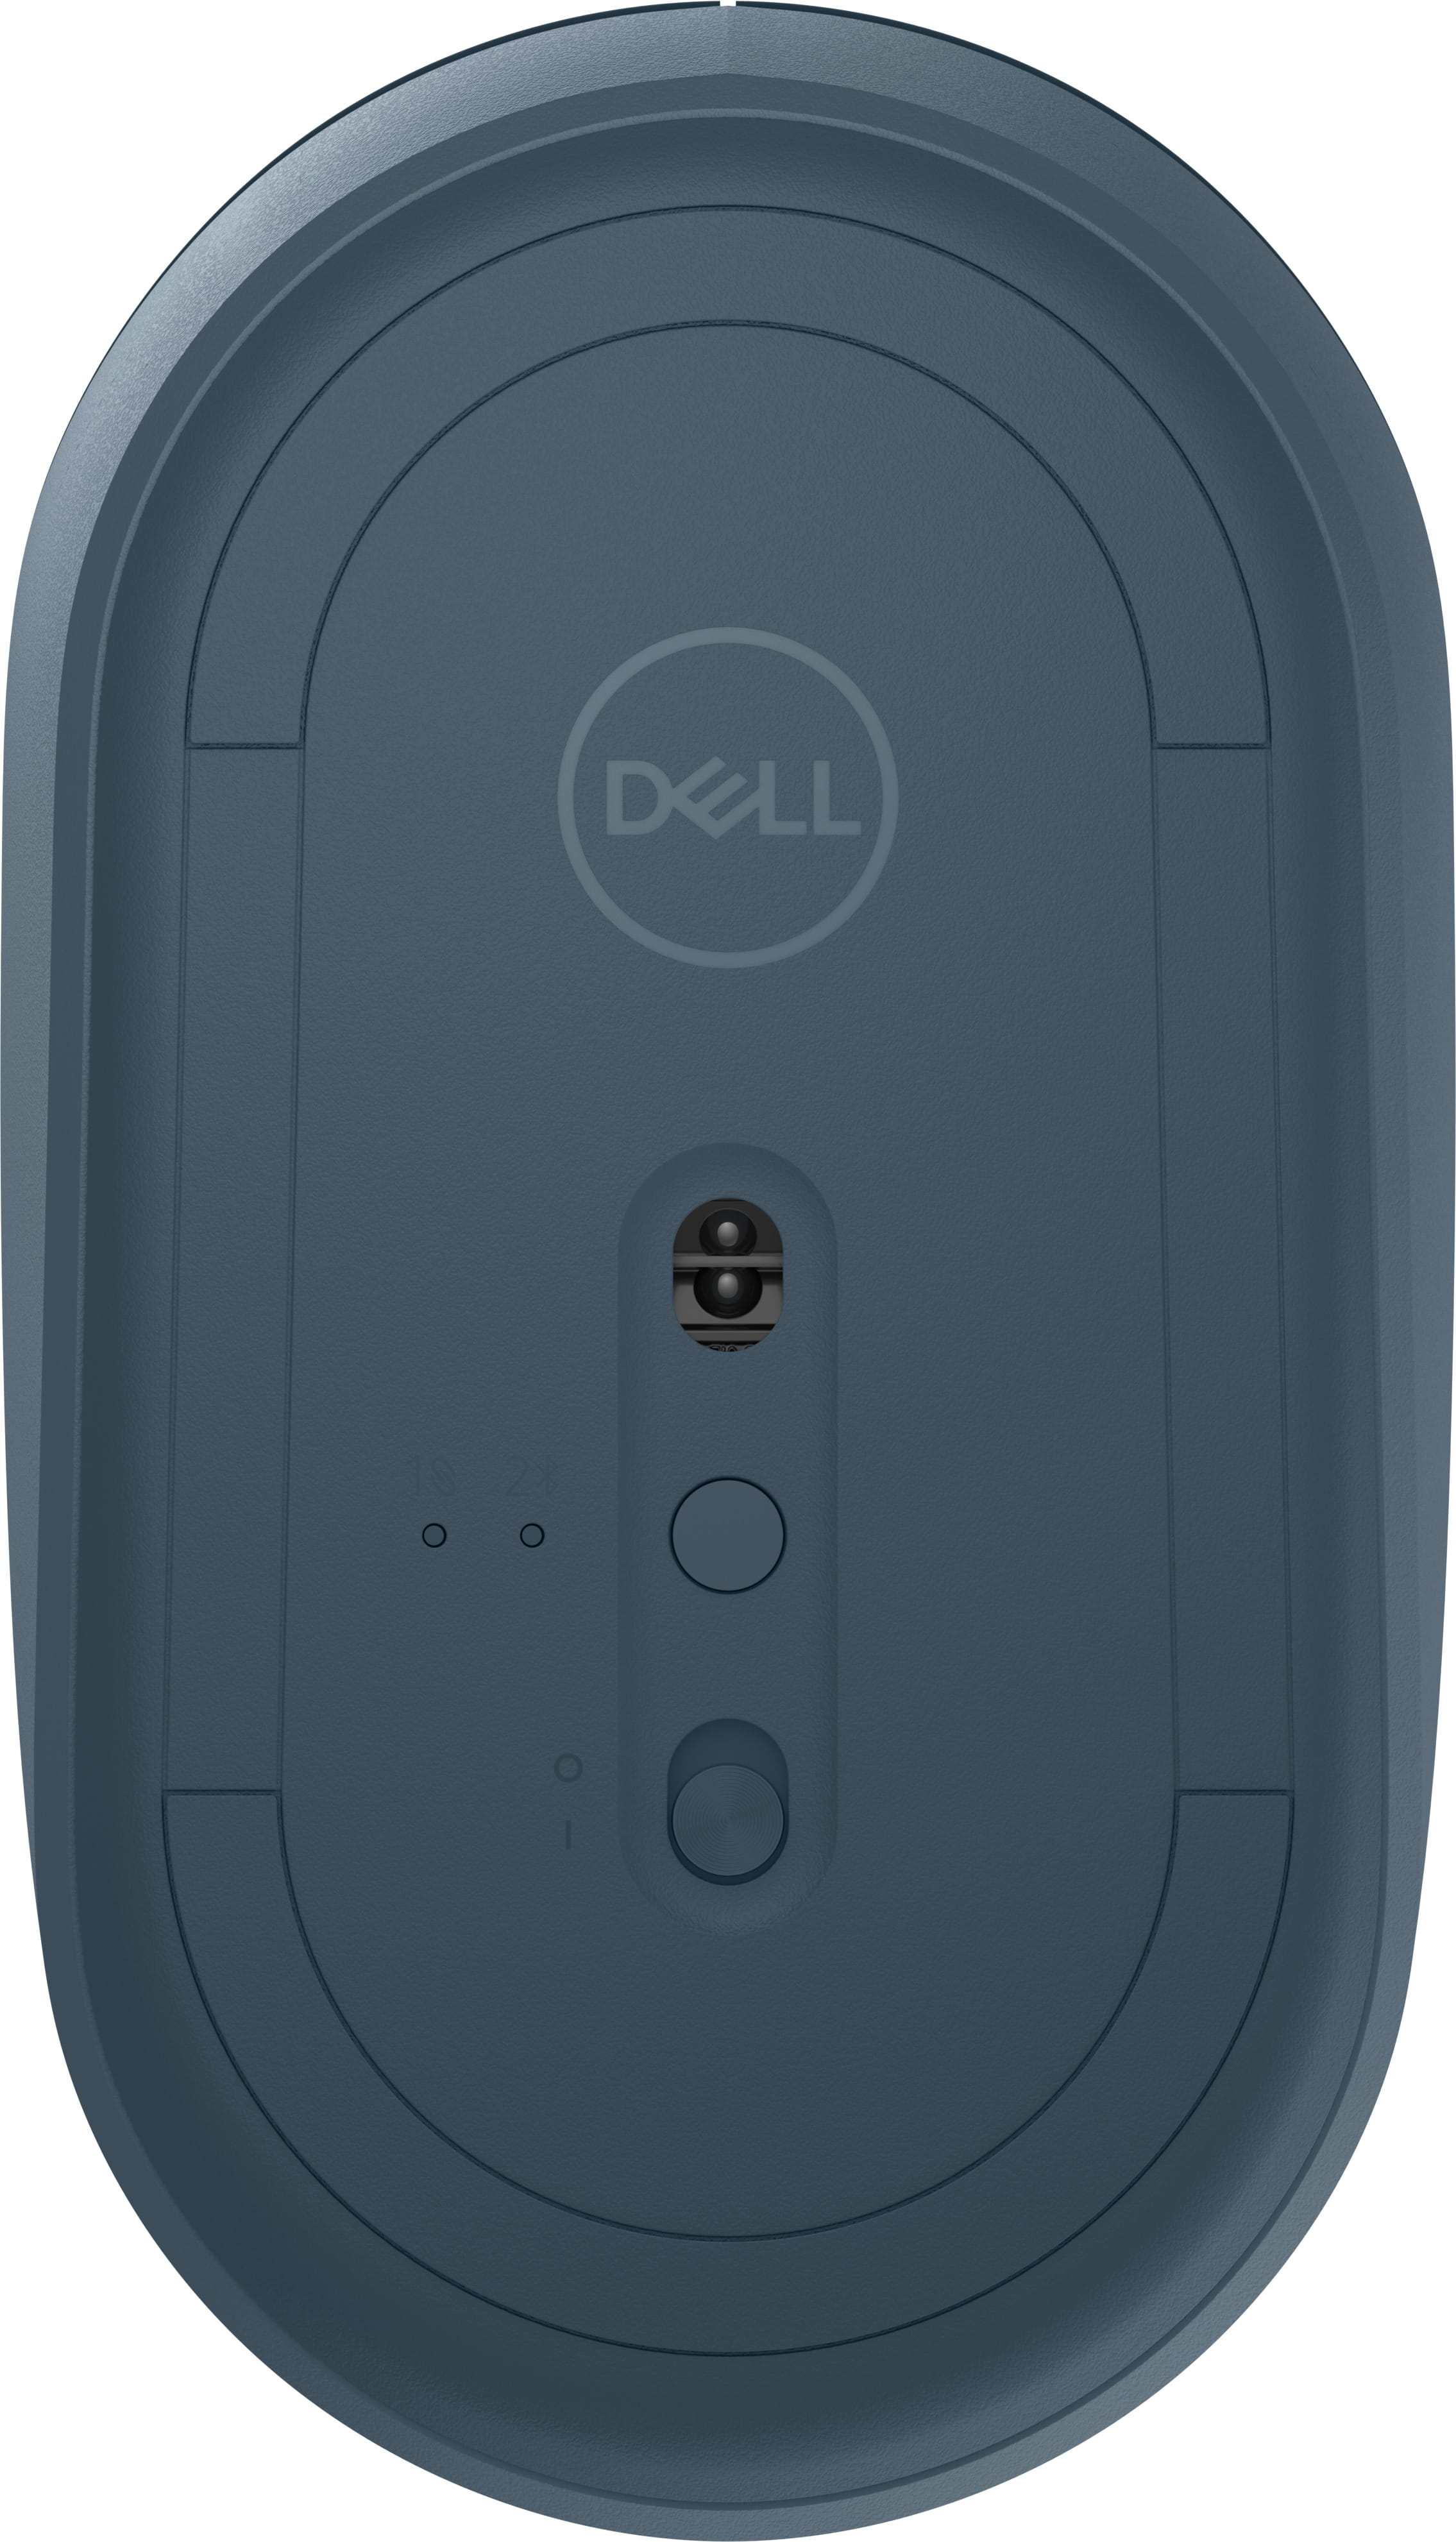 Dell MS3320W - Maus - optische LED - 3 Tasten - kabellos - 2.4 GHz, Bluetooth 5.0 - kabelloser Empfänger (USB)